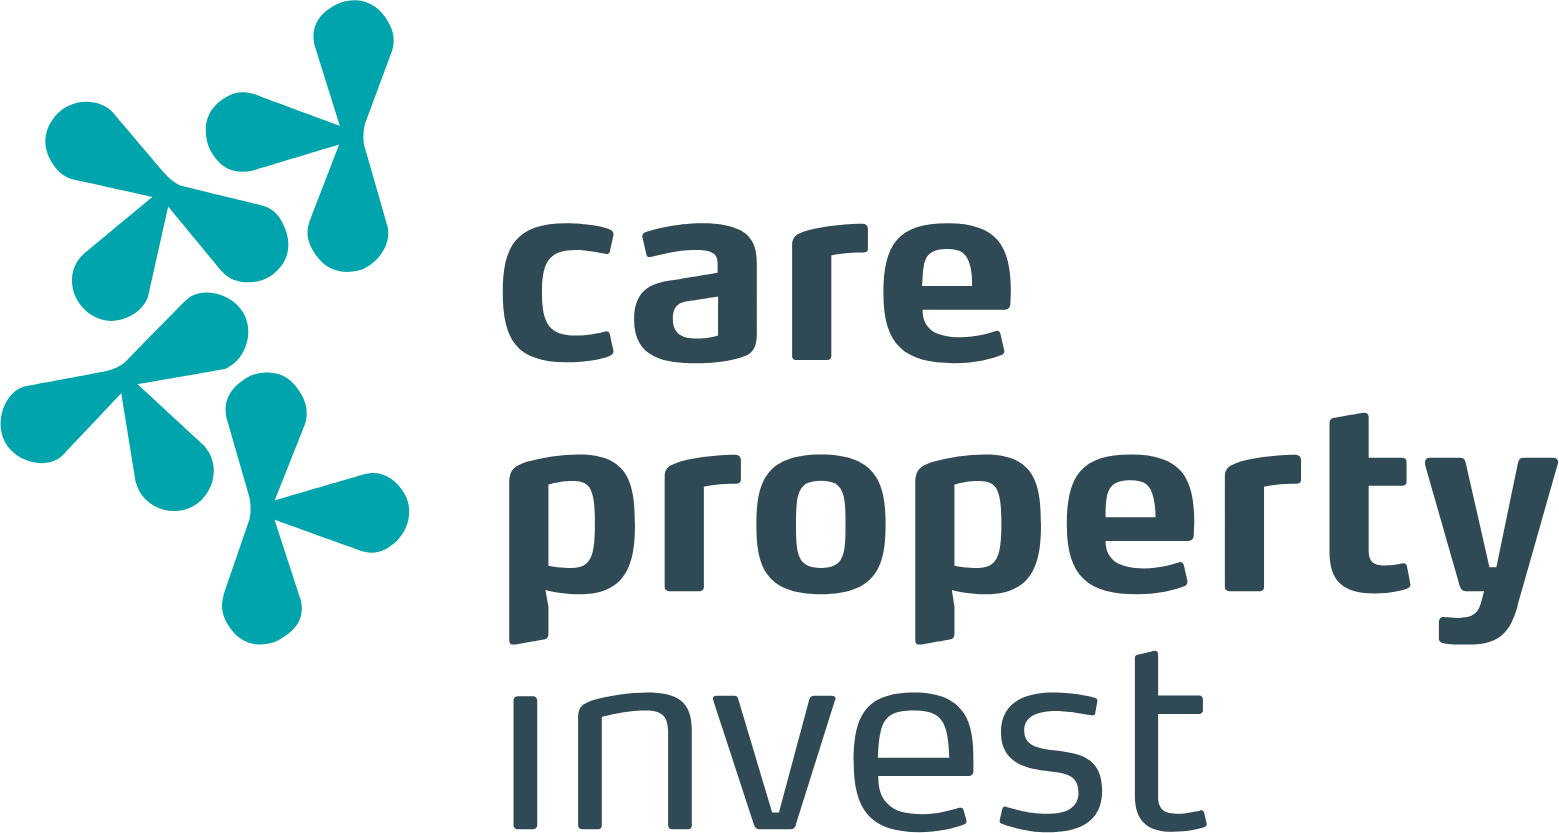 Care Property Invest NV logo large (transparent PNG)